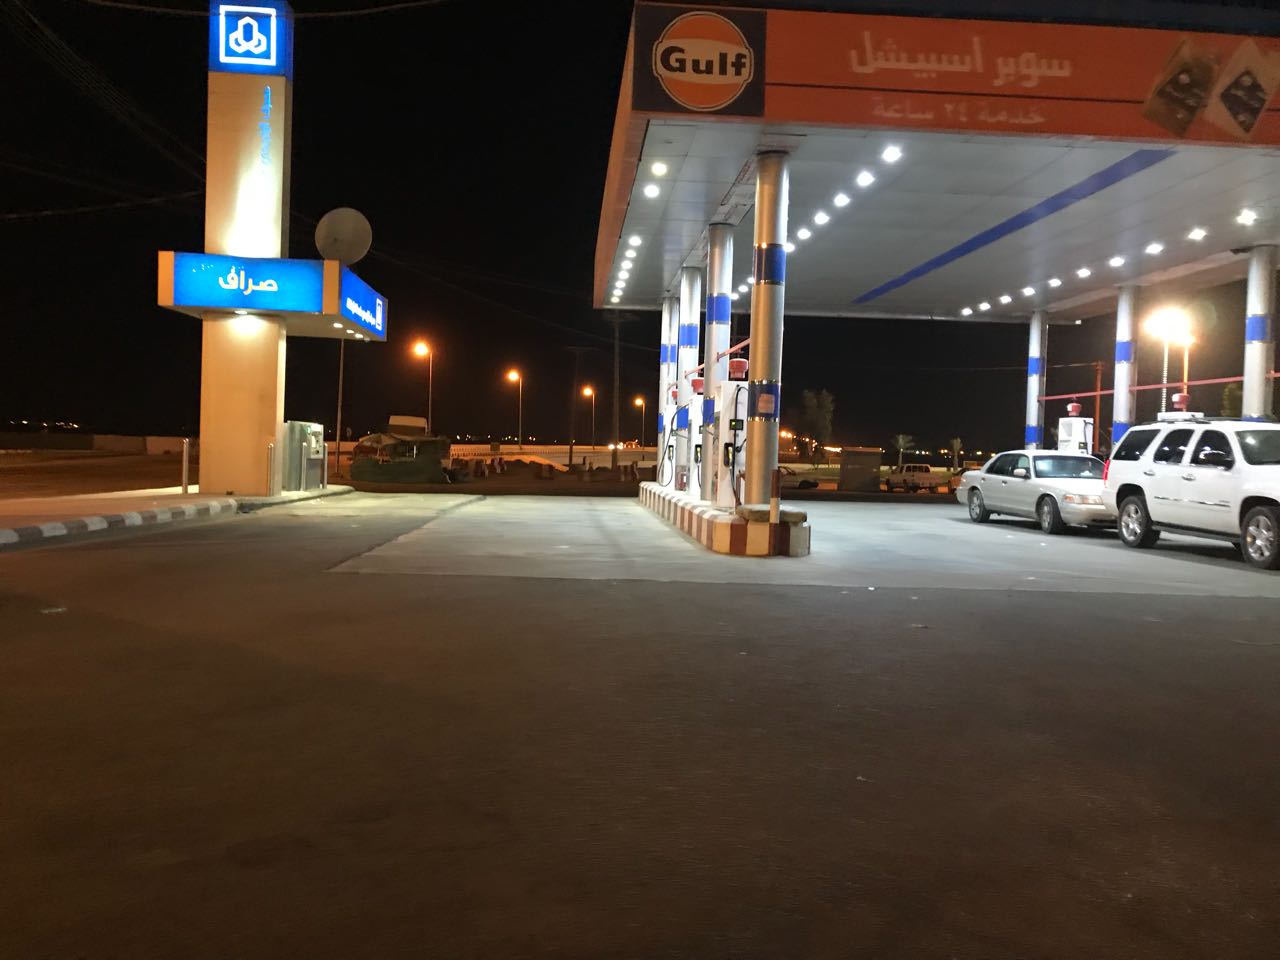 بنزين 91 يختفي في بيشة قبل ارتفاع أسعار الوقود.. هل أرامكو السبب؟